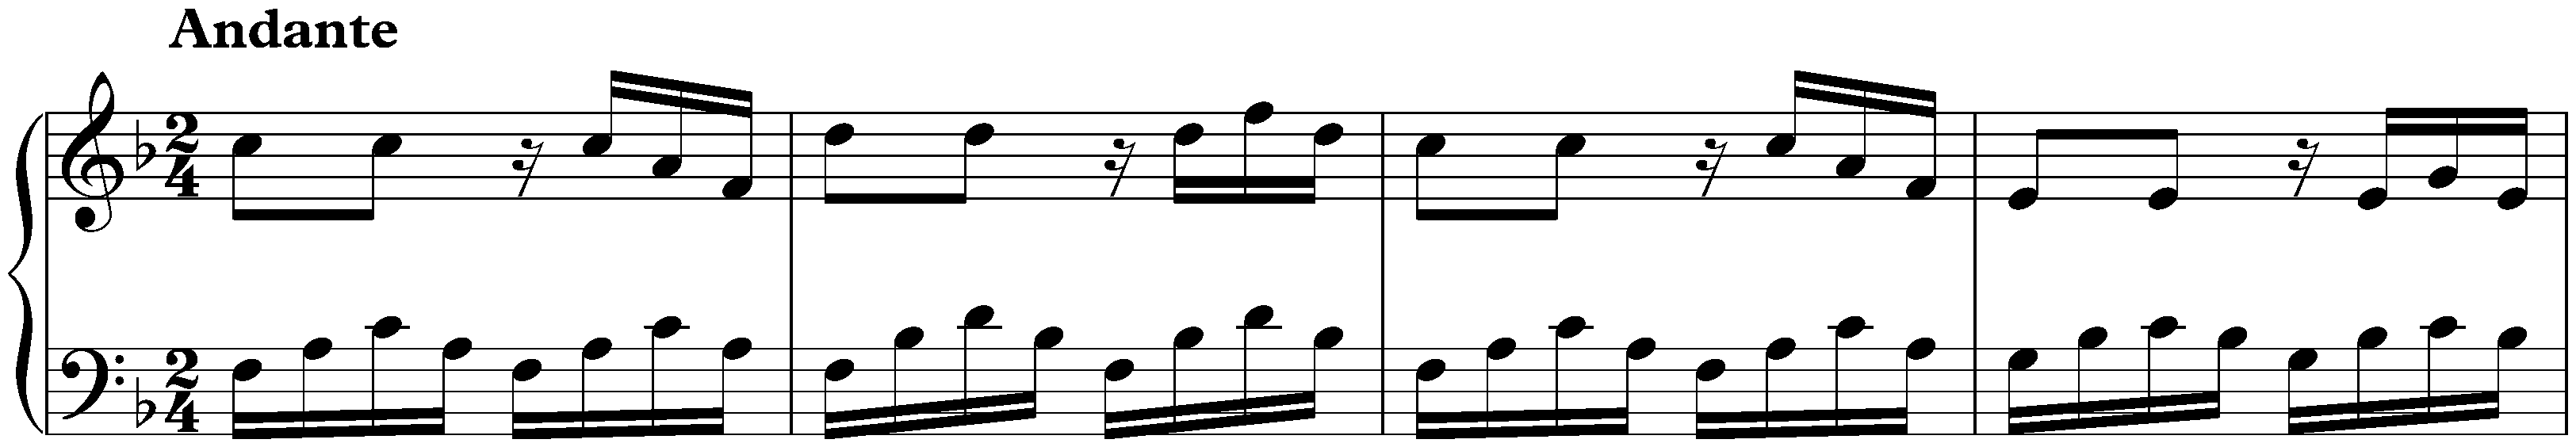 Notebook for Nannerl, KV 1–8; 25. Andante in F major, KV 6/2